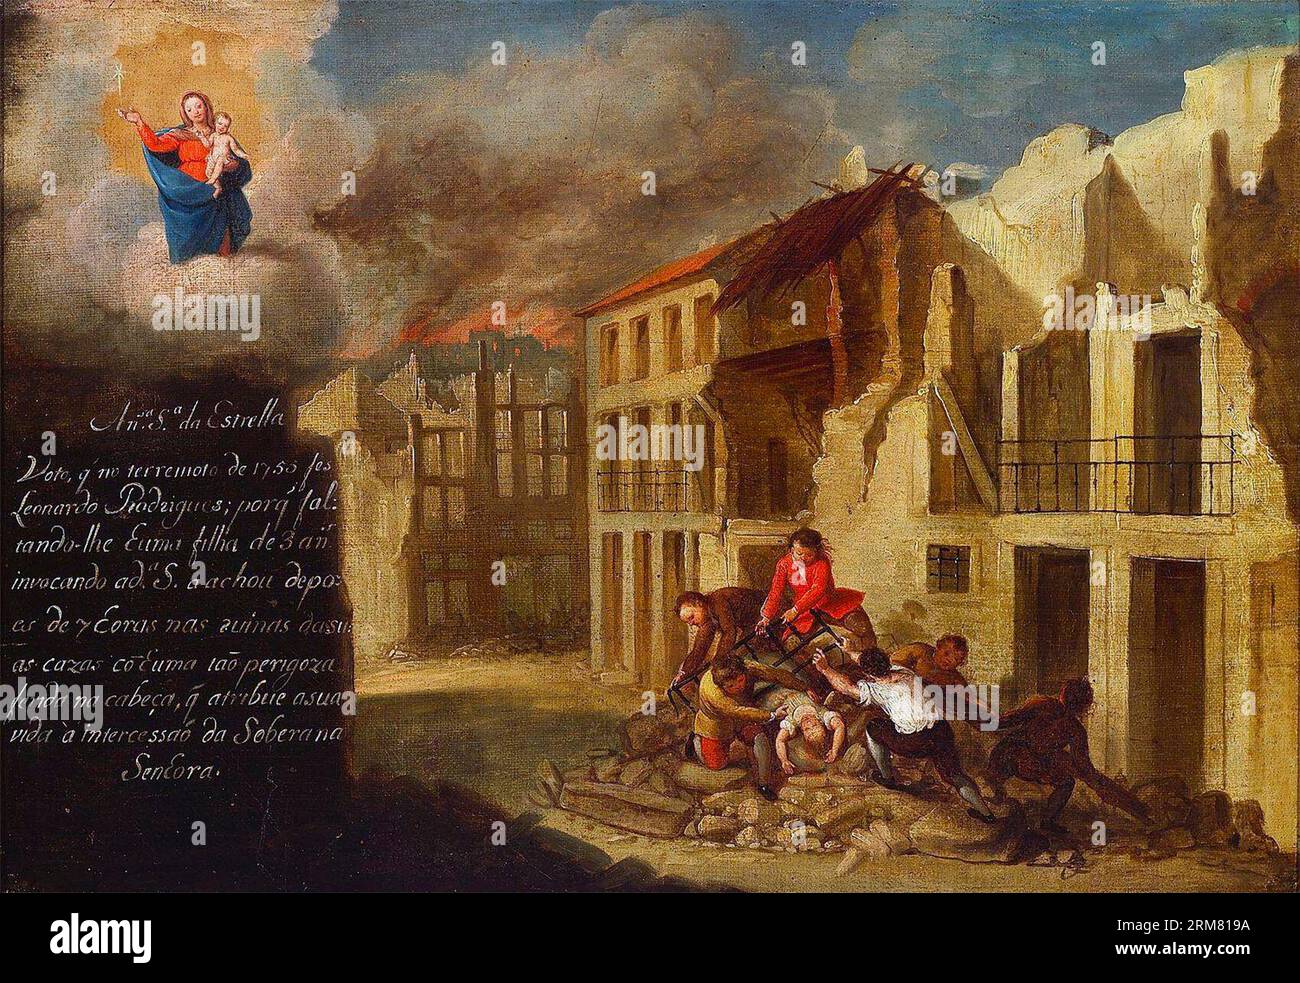 Ein zeitgenössisches Ex-Voto zeigt die Rettung eines dreijährigen aus dem gefallenen Mauerwerk, unter dem wachsamen Blick der Muttergottes vom Stern ein Ex-Voto der Muttergottes vom Stern, und zeigt Szenen des Erdbebens von Lissabon 1755. Stockfoto